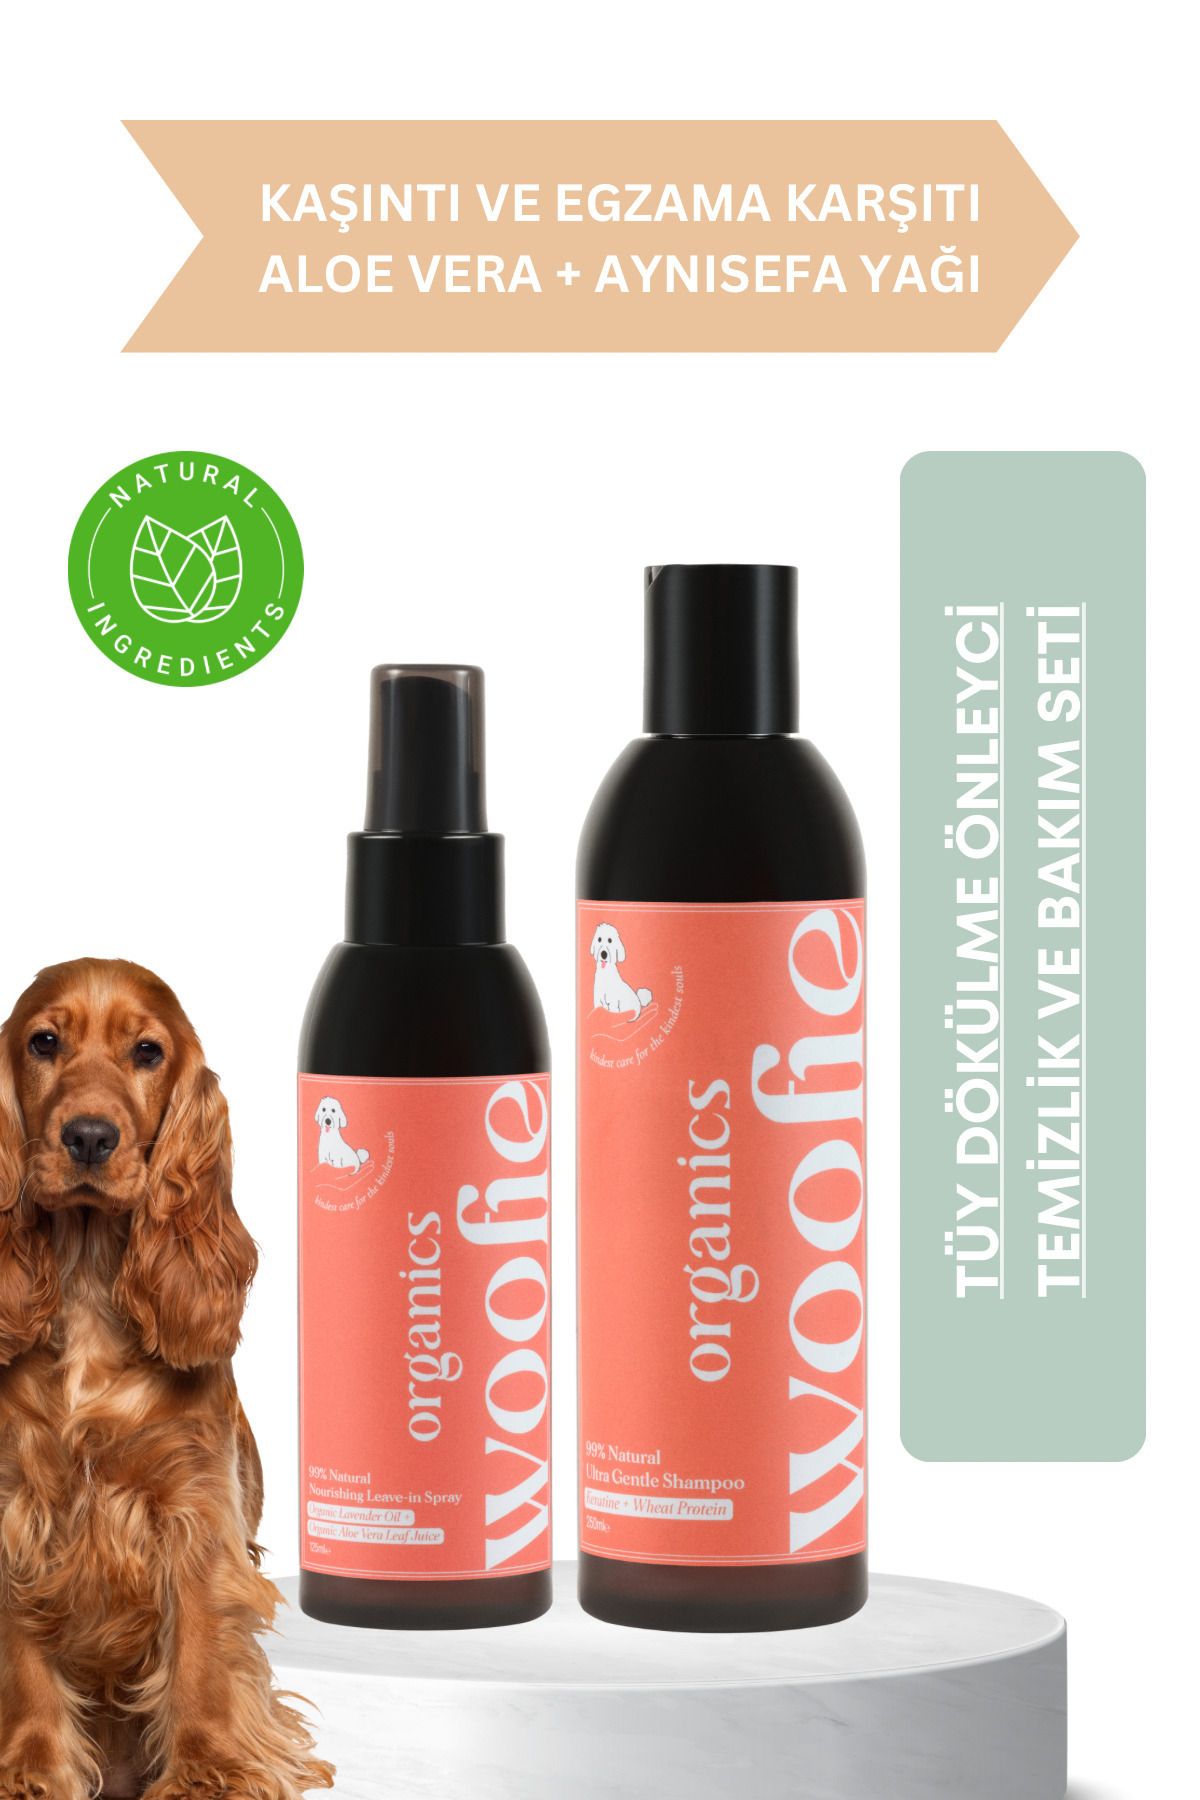 Woofie Organics Tüy Dökülme Karşıtı Organik Köpek Tüy Bakım Seti - Köpek Şampuanı Ve Tüy Bakım Spreyi